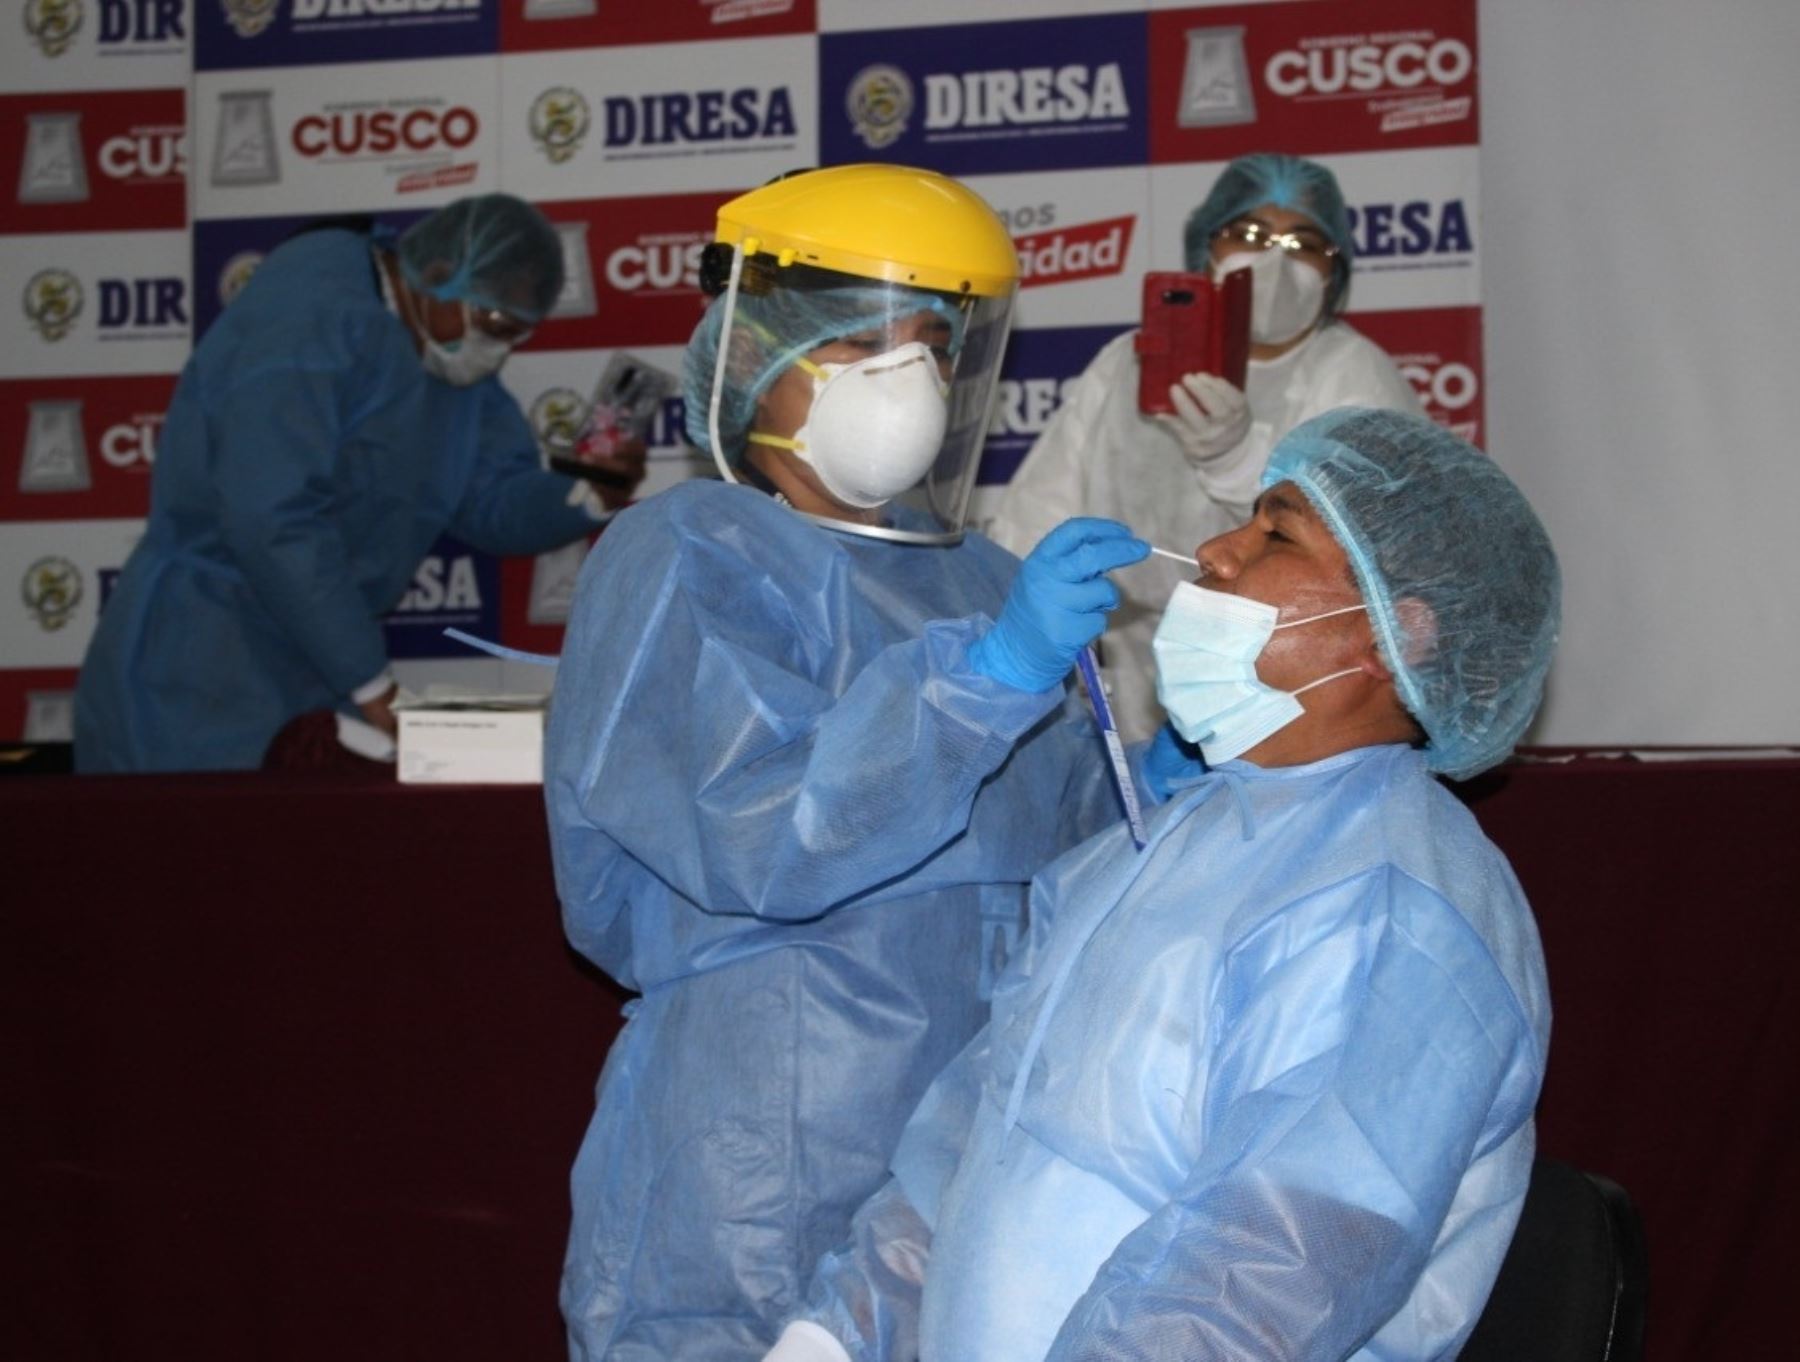 La Gerencia Regional de Salud de Cusco propuso aplicar pruebas antigénicas a todas las personas que lleguen a Cusco para evitar la propagación del coronavirus (covid-19) en esa región.